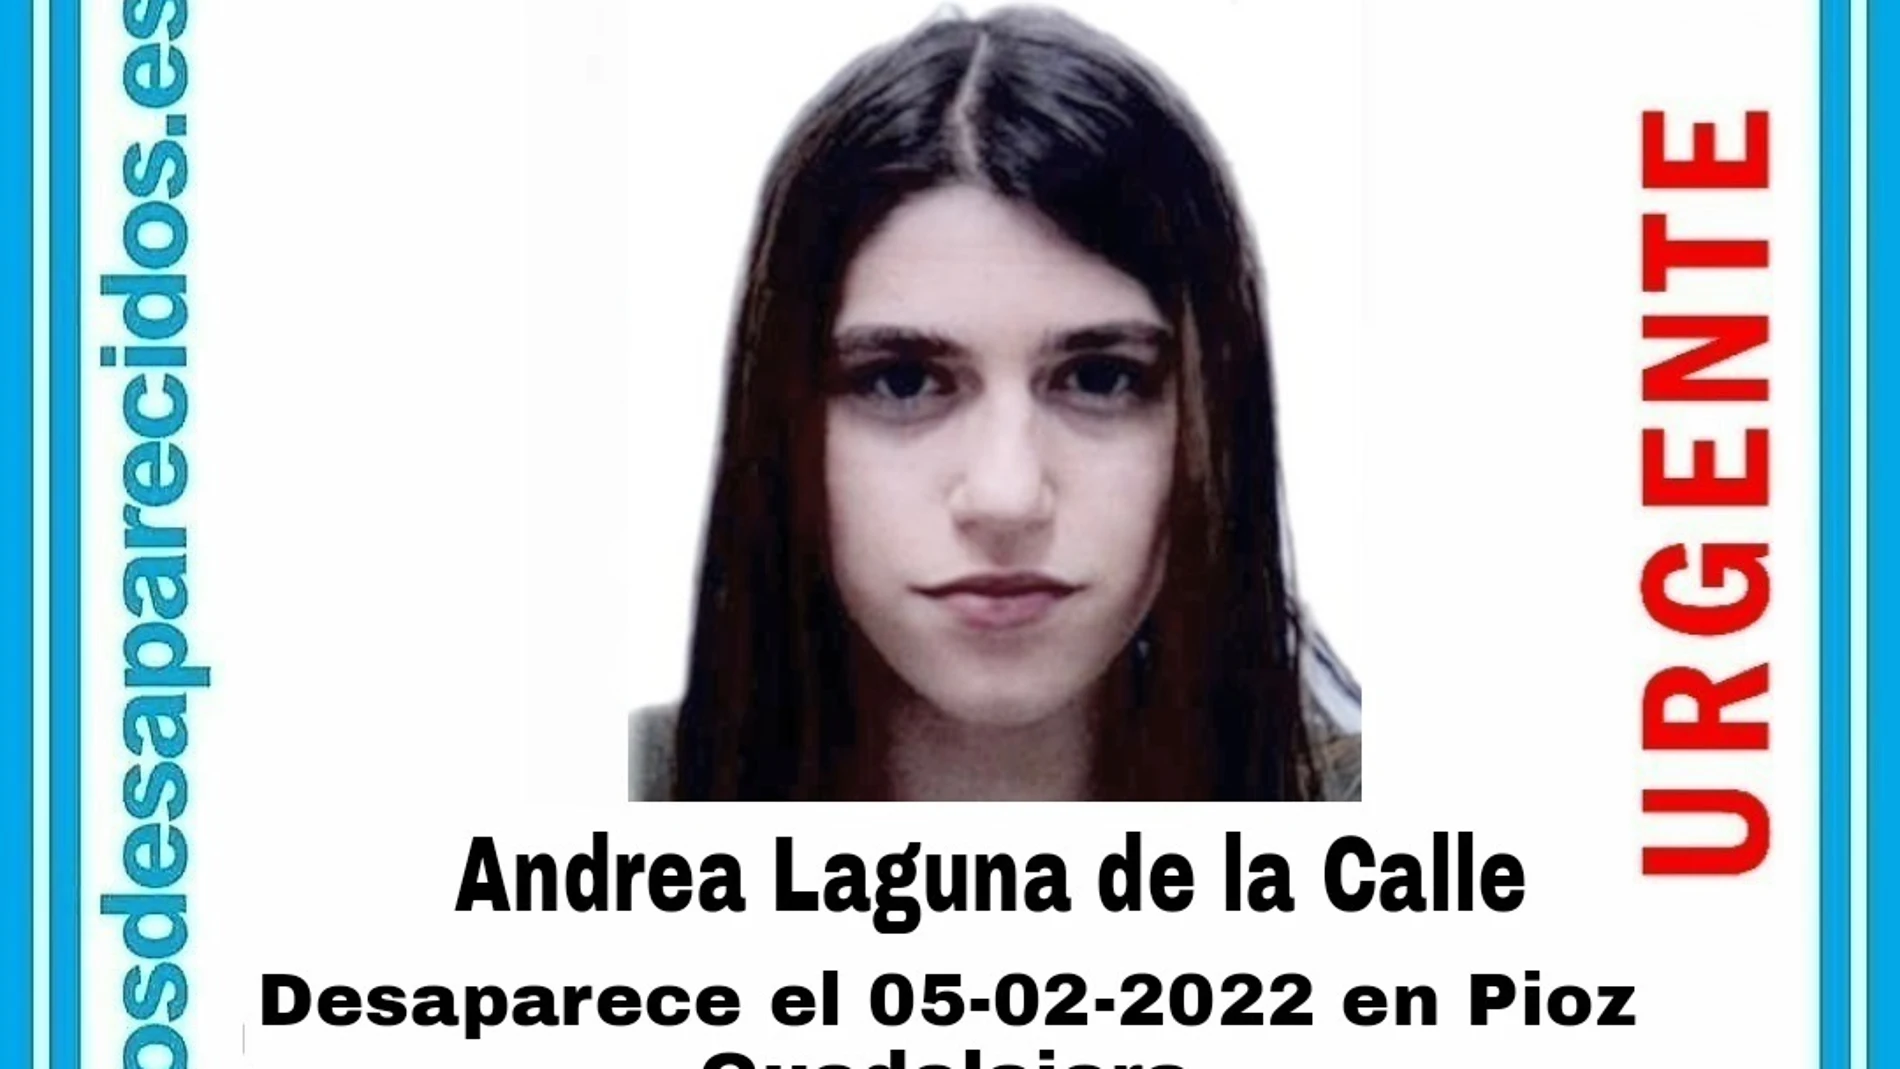 Chica de 17 años desaparecida en Pioz, Guadalajara